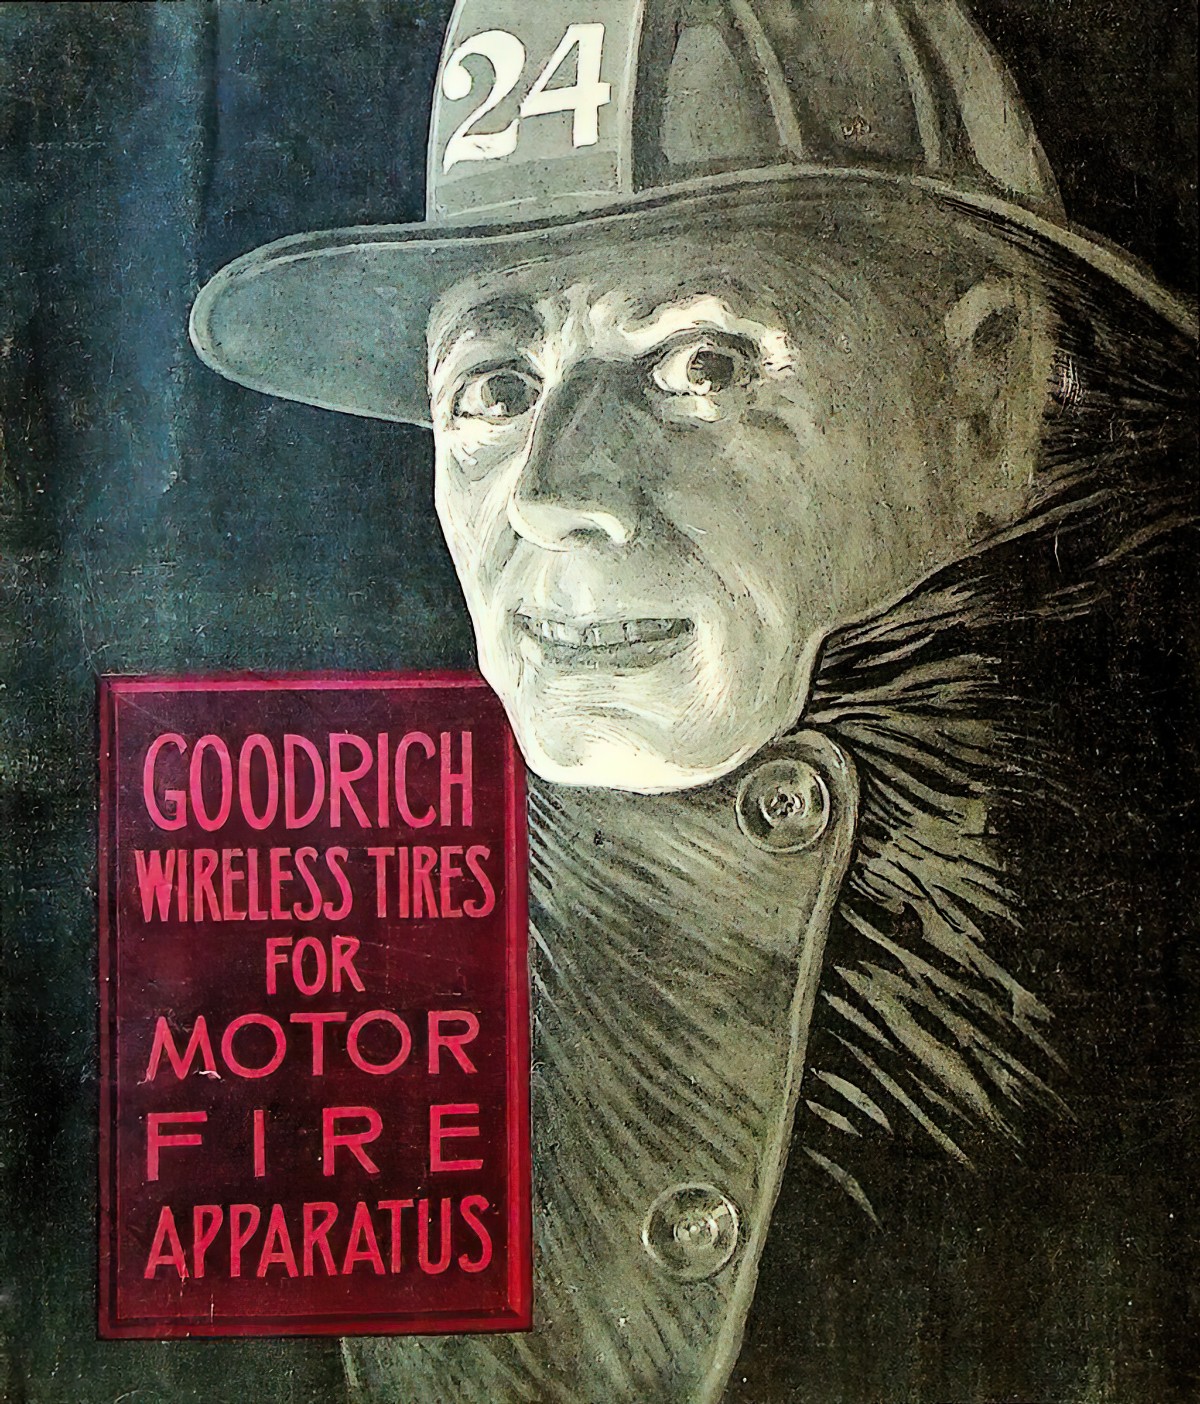 Municipal Journal Magazine November 14 1912 (a Seattle magazine about Construction Machinery) cover art